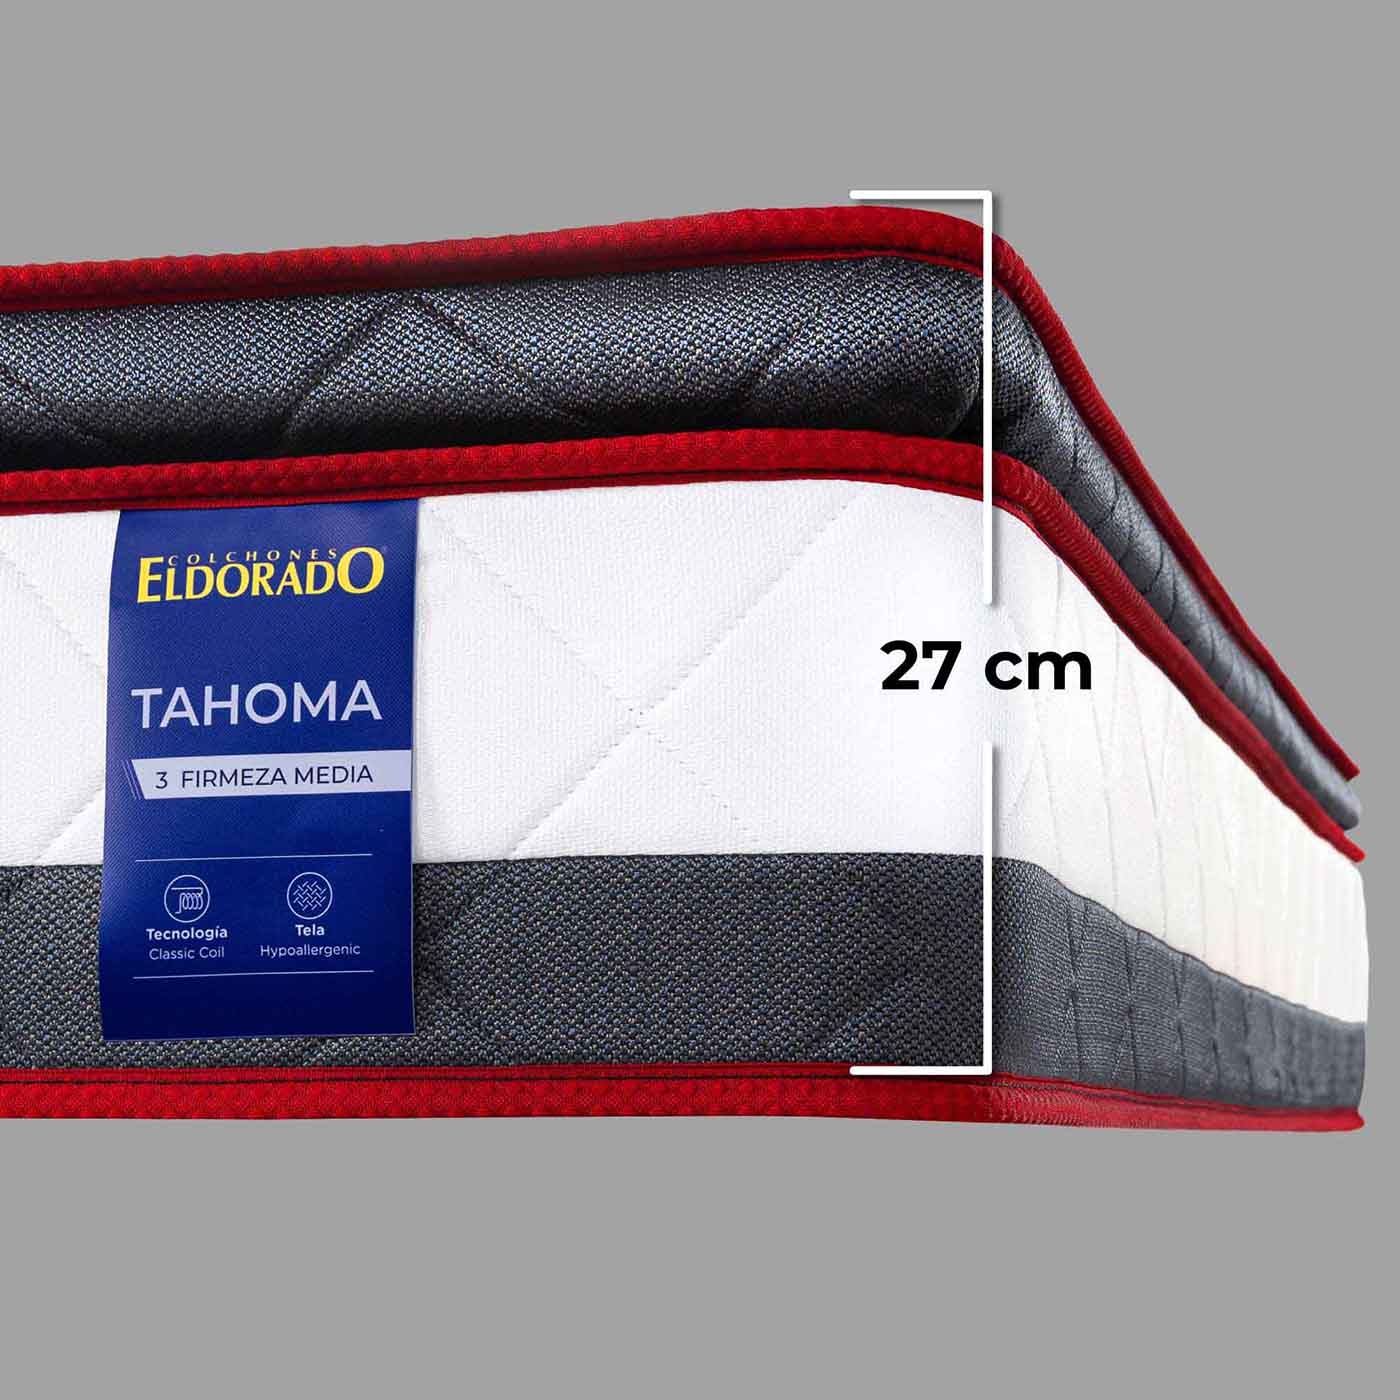 Combo Colchón ELDORADO Doble Tahoma 140 x 190 cm + Base Cama Belly Gris